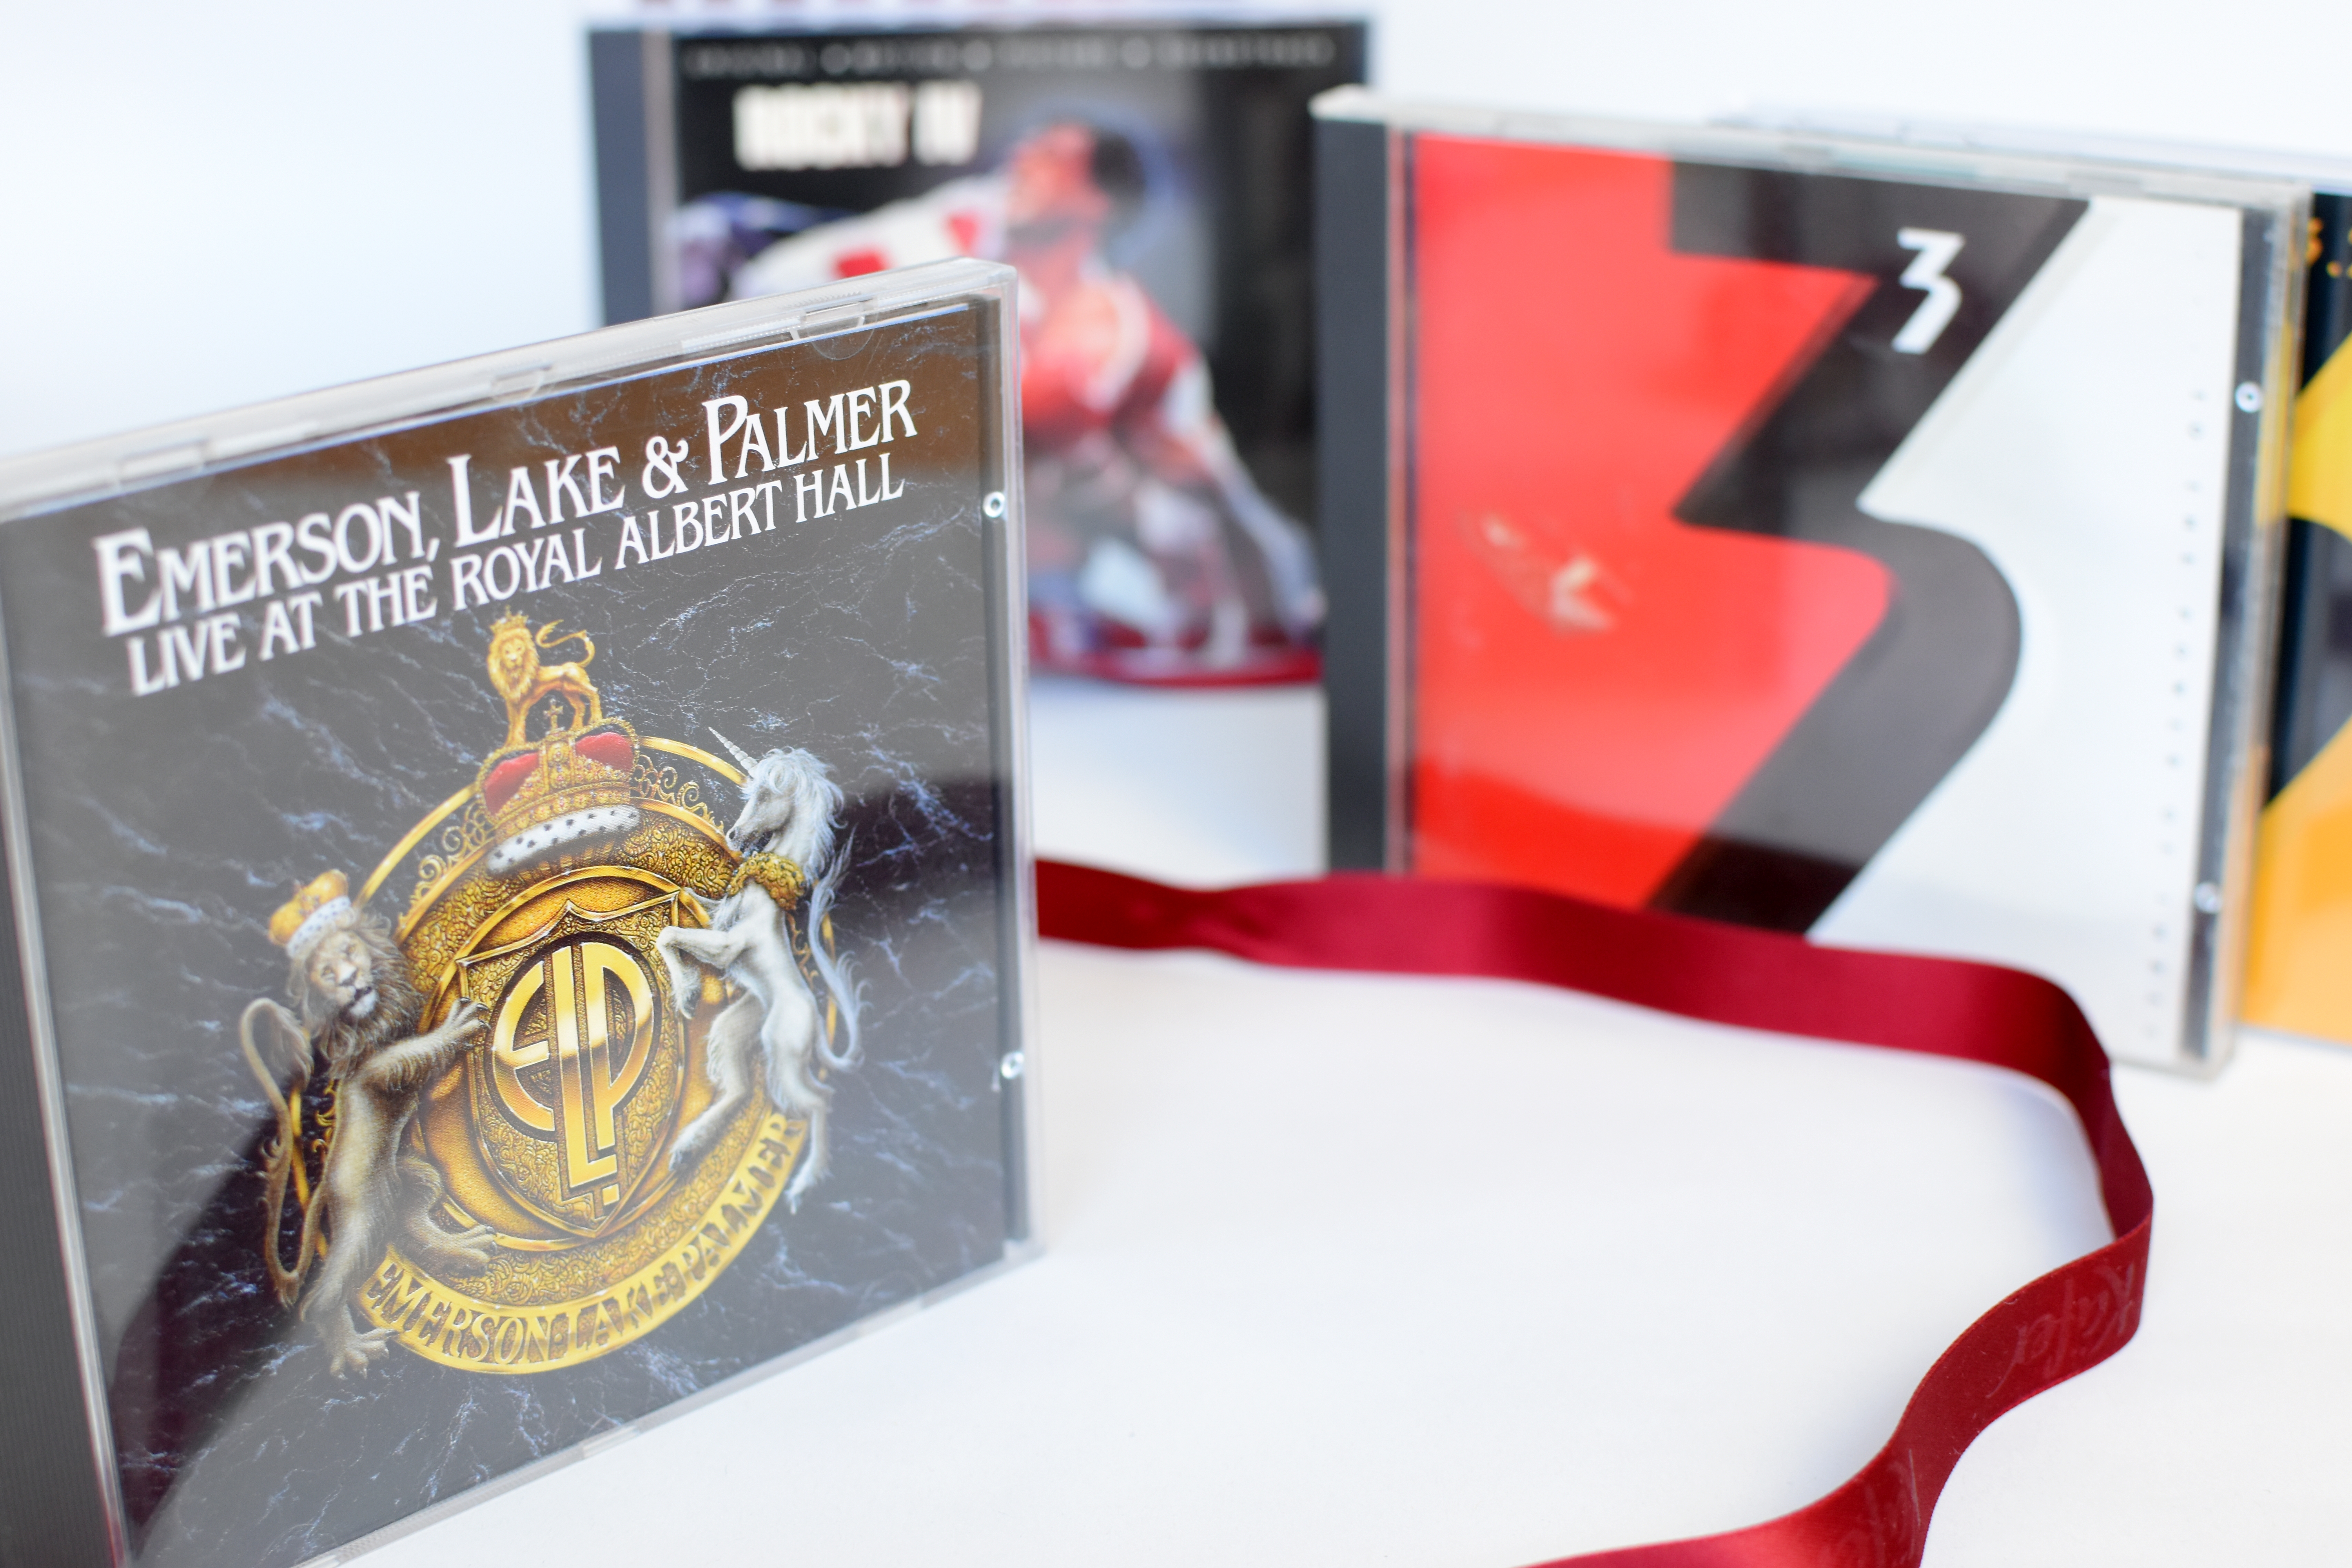 Emerson Lake & Palmer Live at the Royal Albert Hall